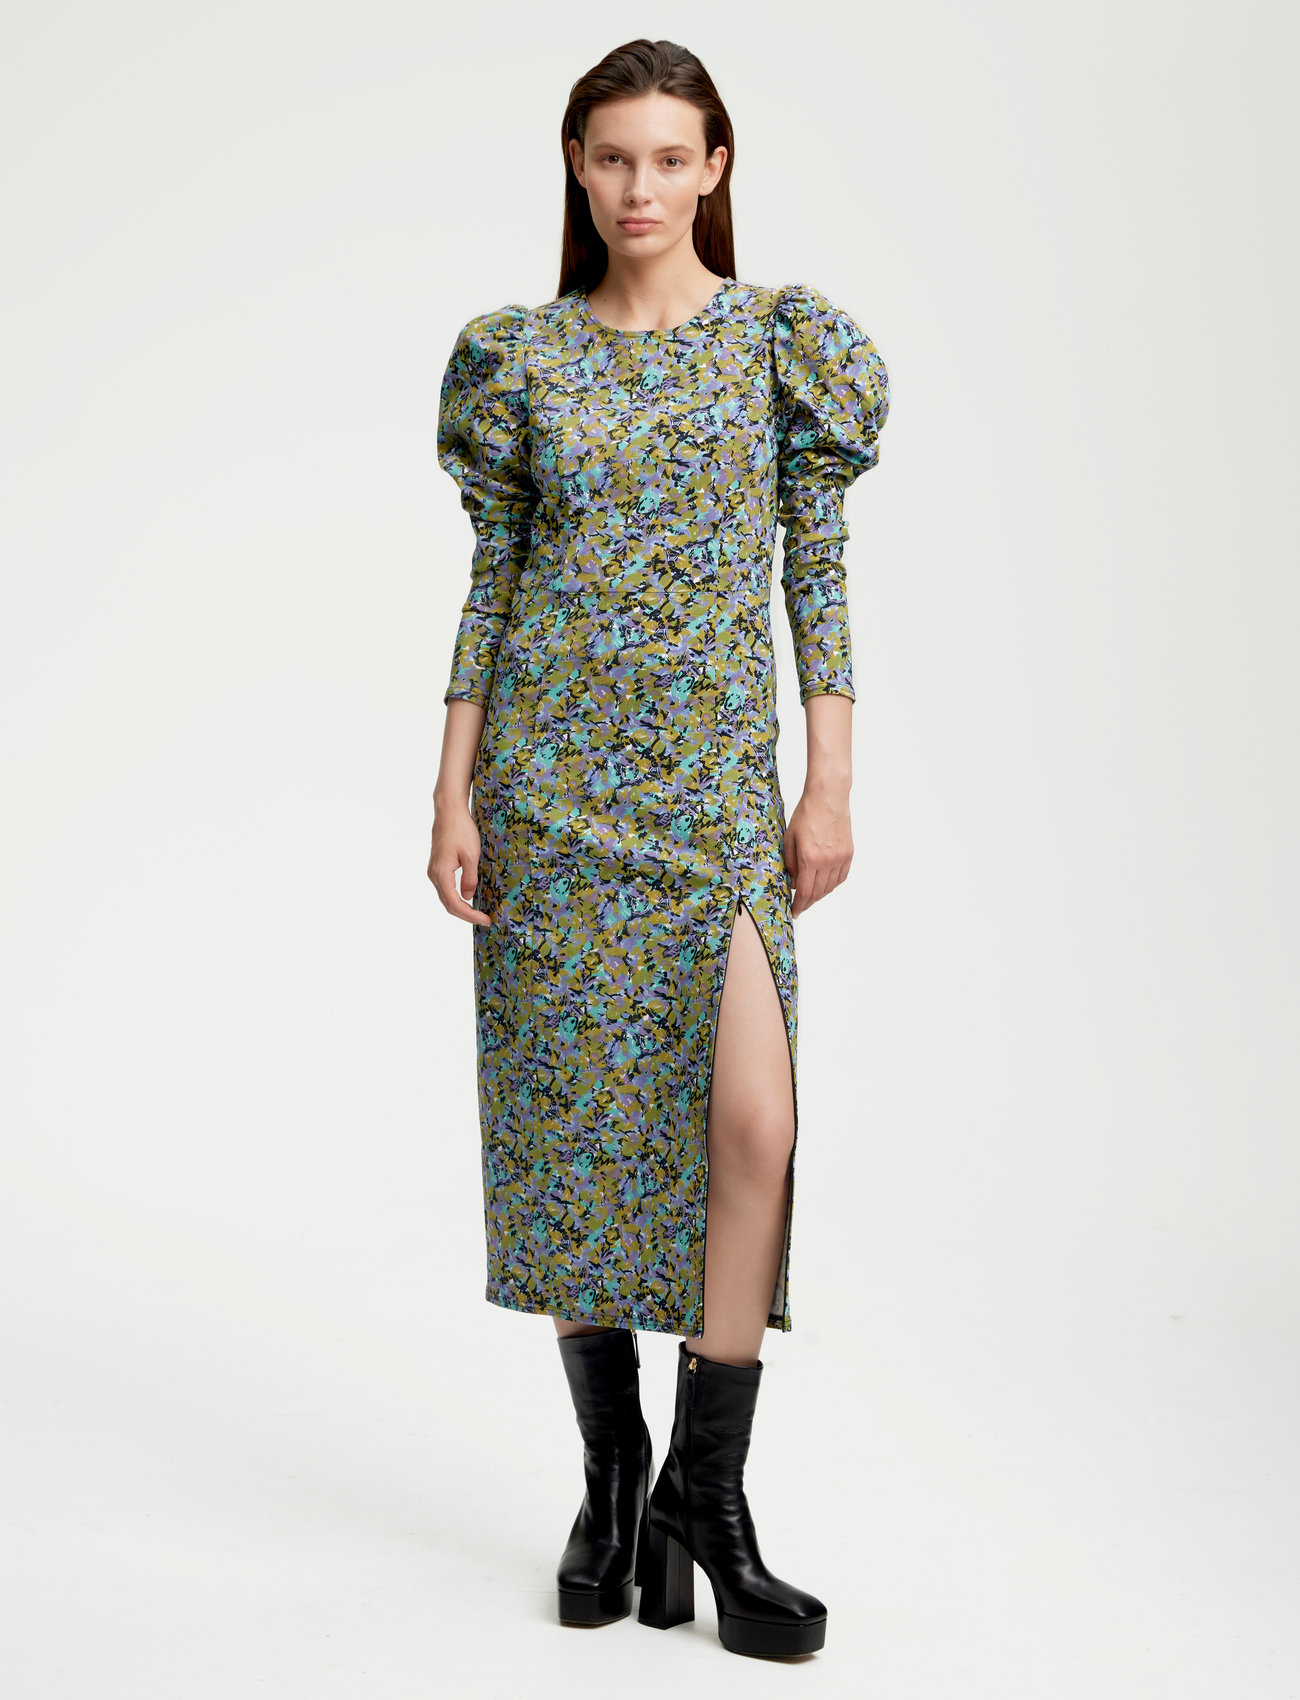 Arinagz - Midi kjoler - Boozt.com